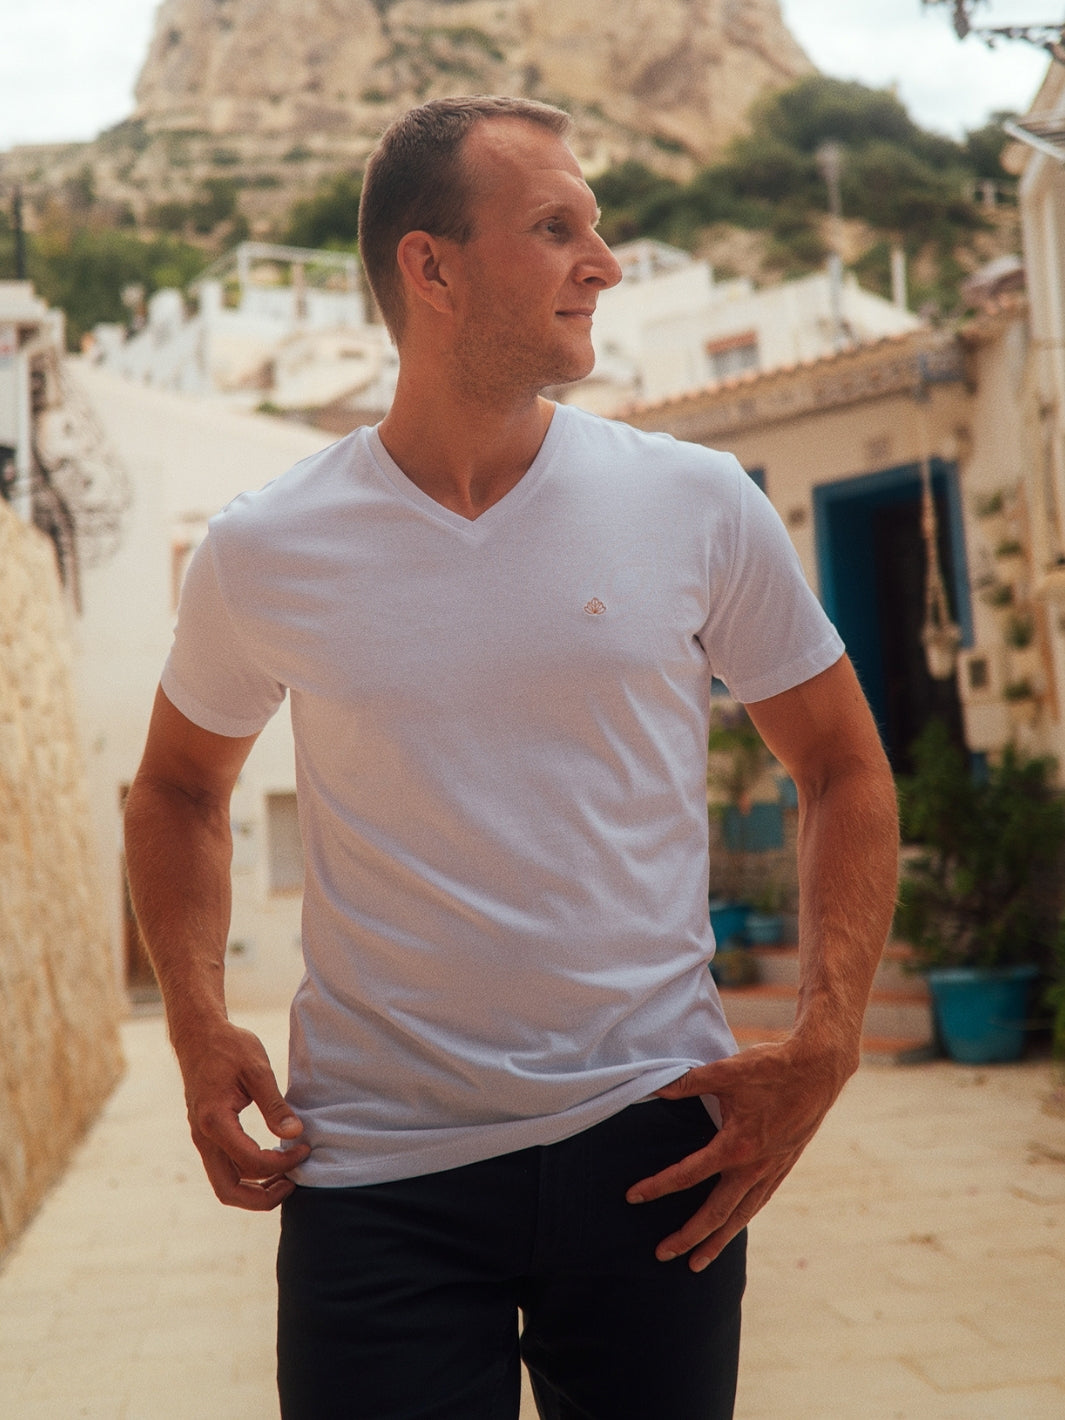 Sanremo pánské tričko s výstřihem do V z biobavlny bílé muž ve městě s rukama v kapse